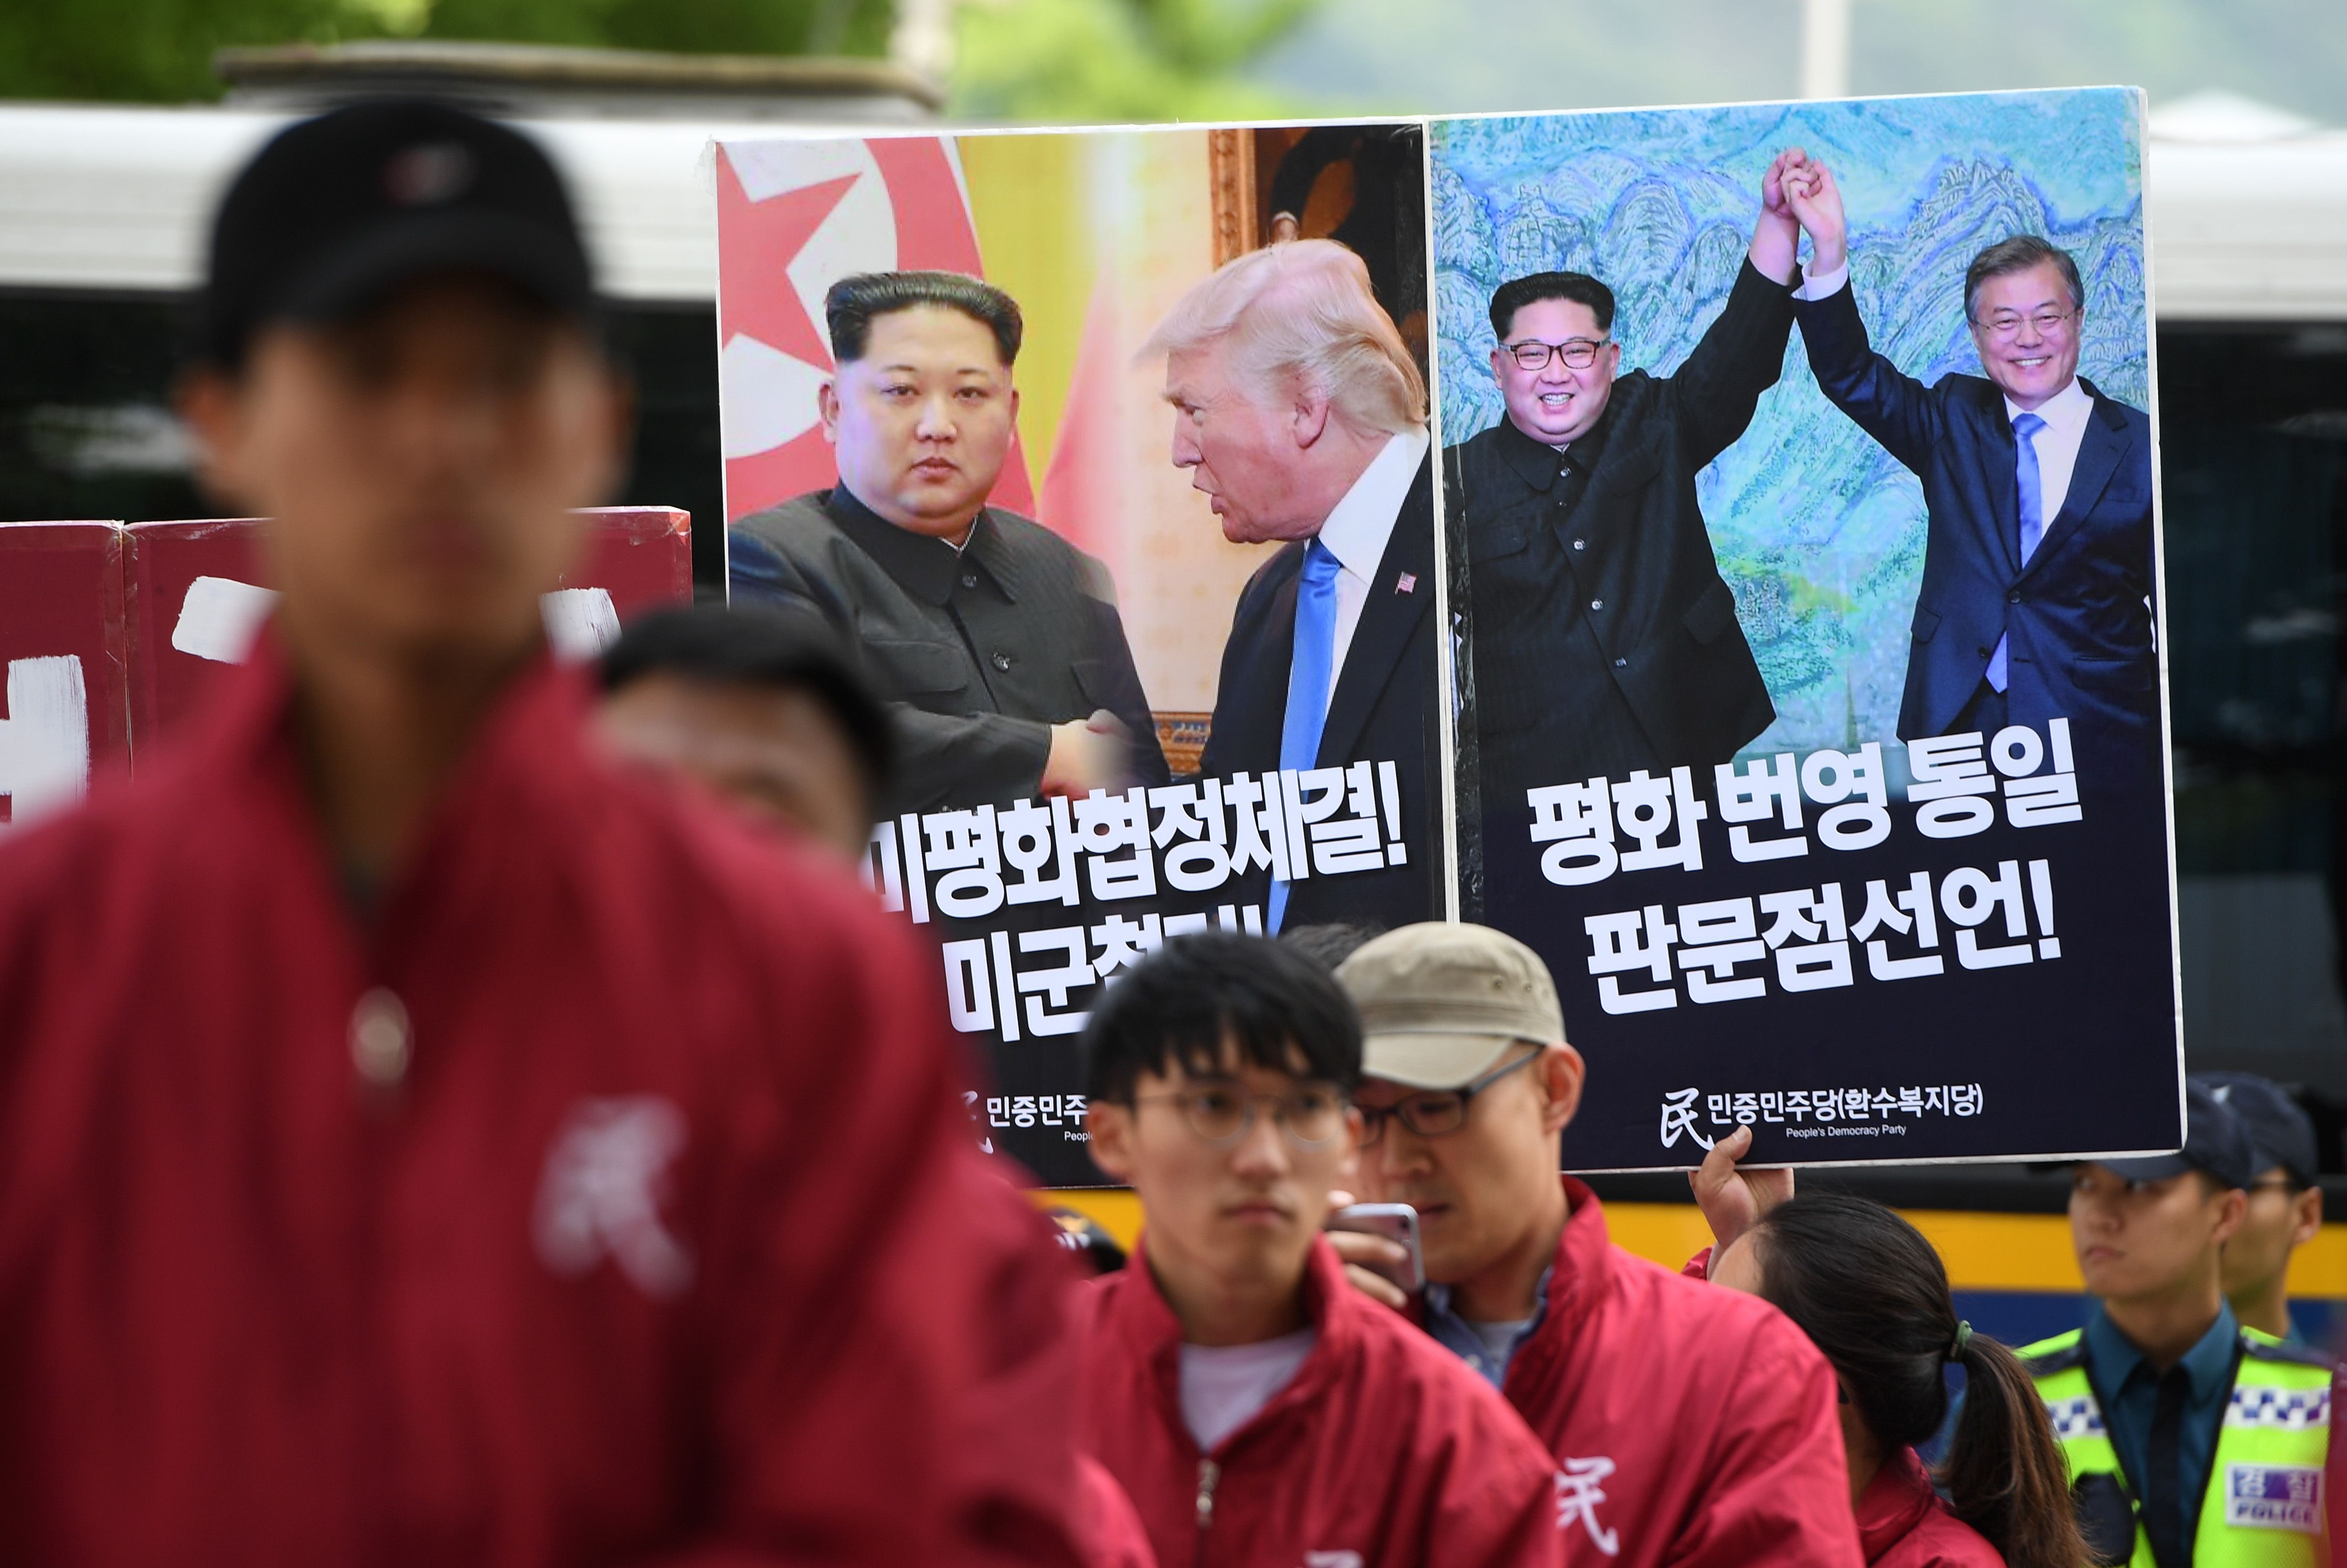 مسيرات بكوريا الجنوبية تطالب بتوقيع معاهدة سلام بين واشنطن وبيونج يانج